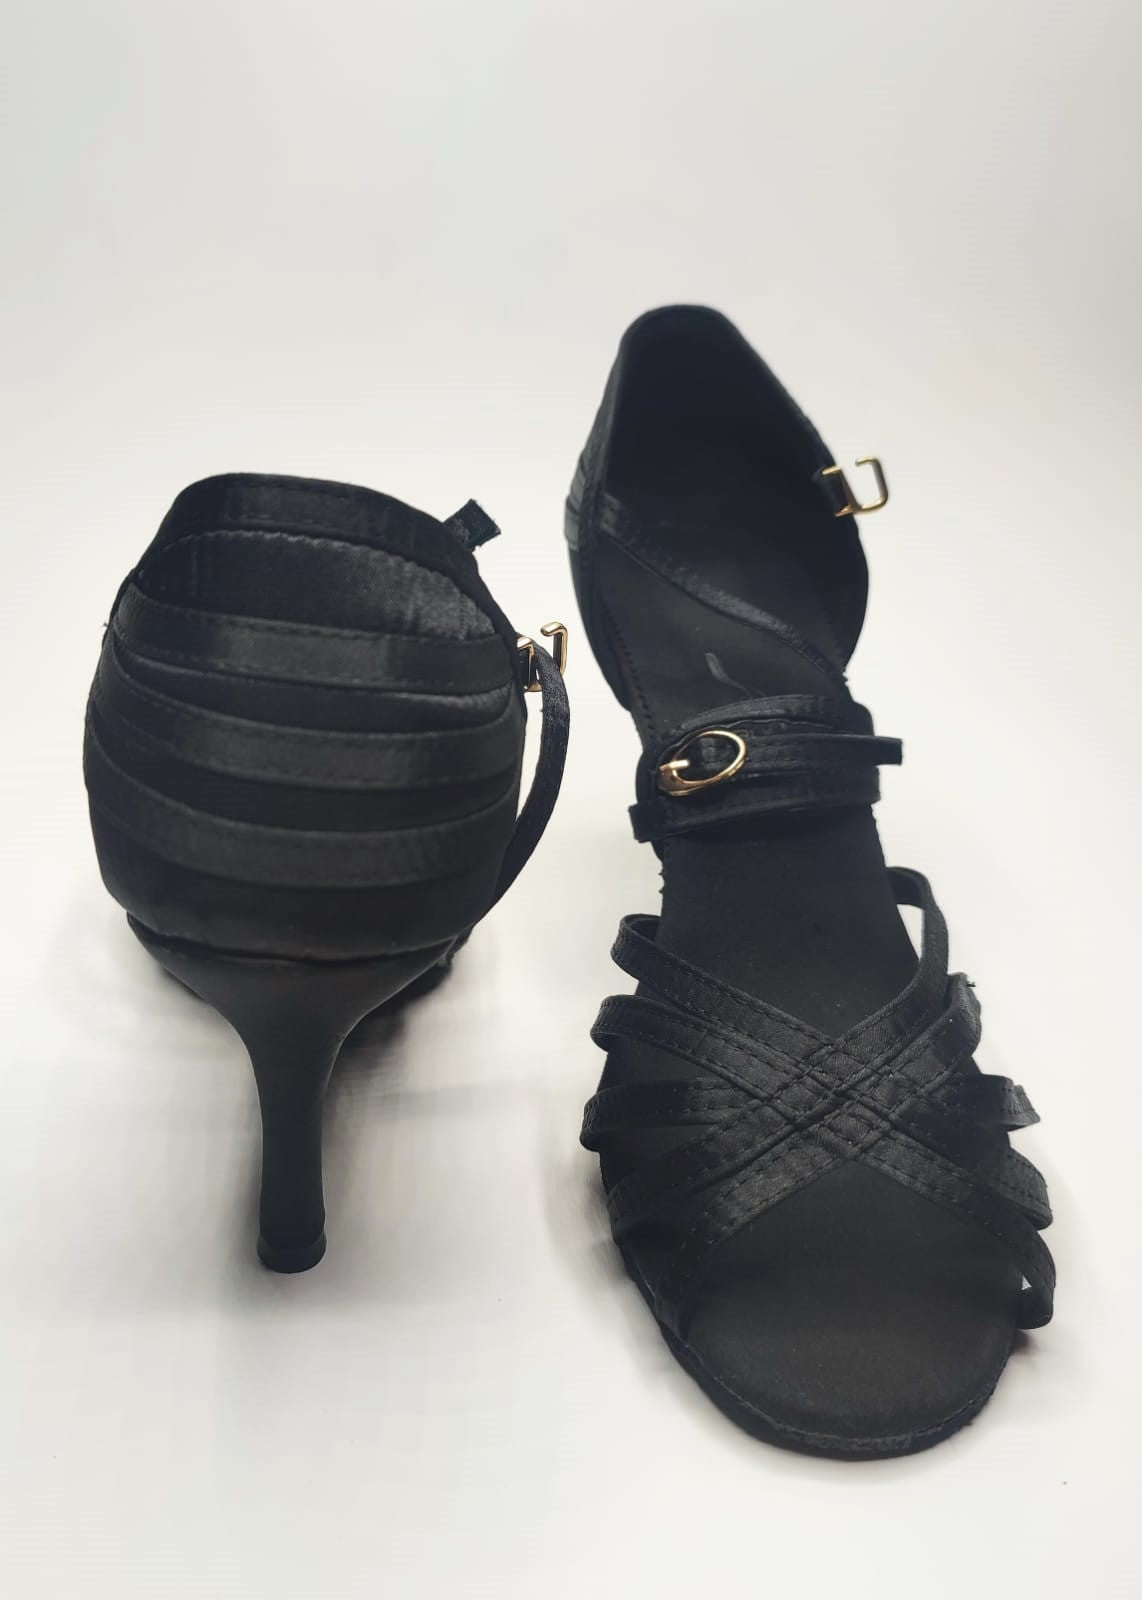 Taille 39-40 - Chaussure noire élégante